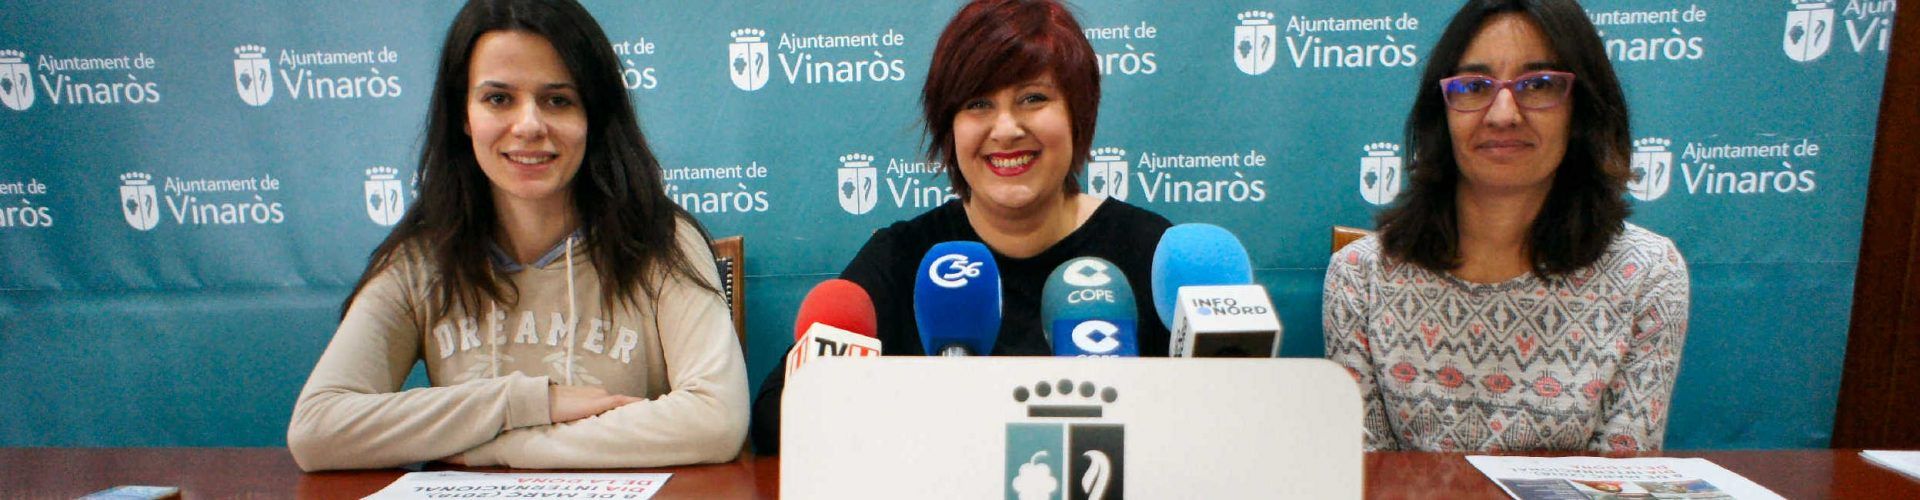 Vinaròs presenta la programació del Dia de la Dona 2018